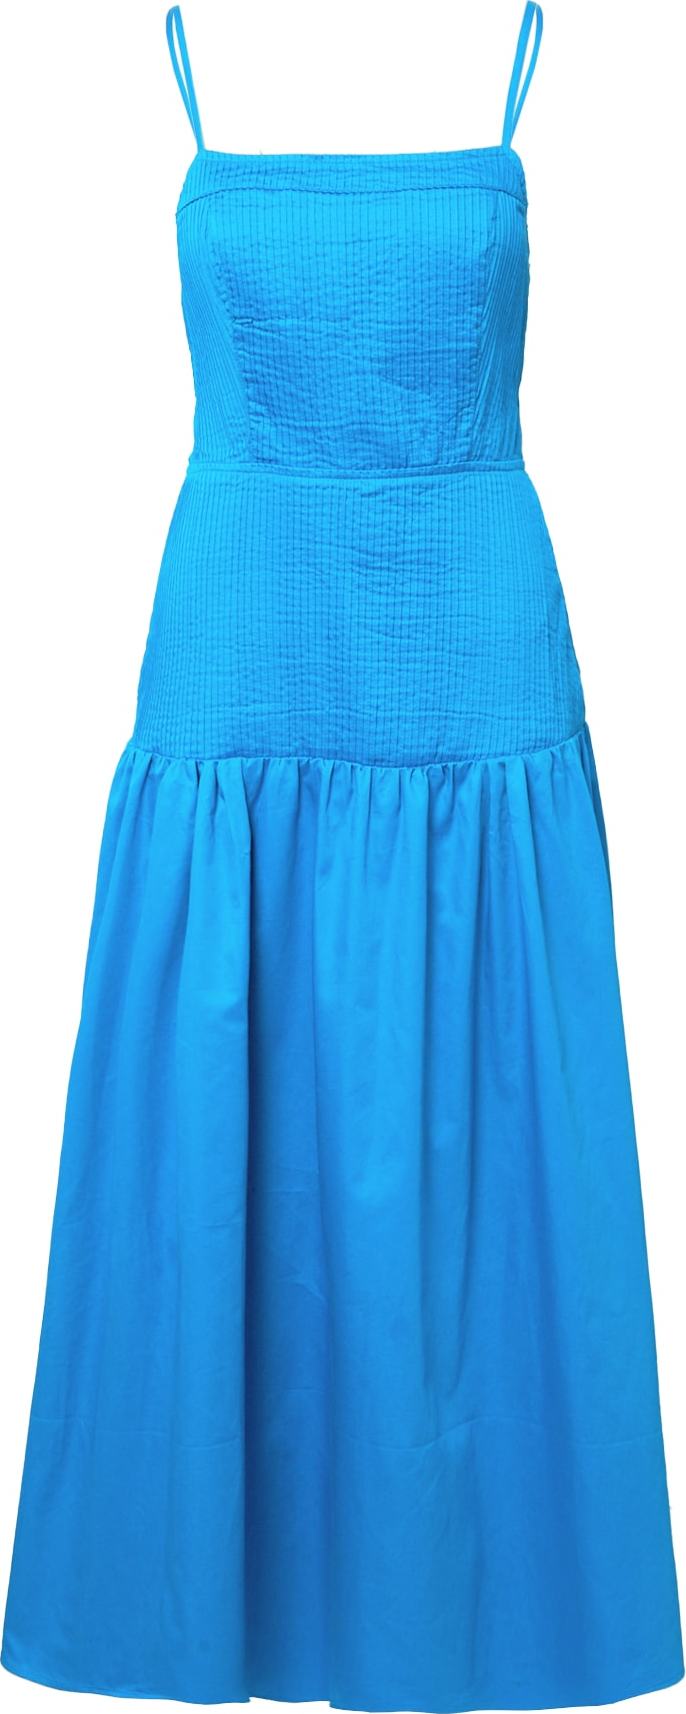 Šaty Warehouse kobaltová modř